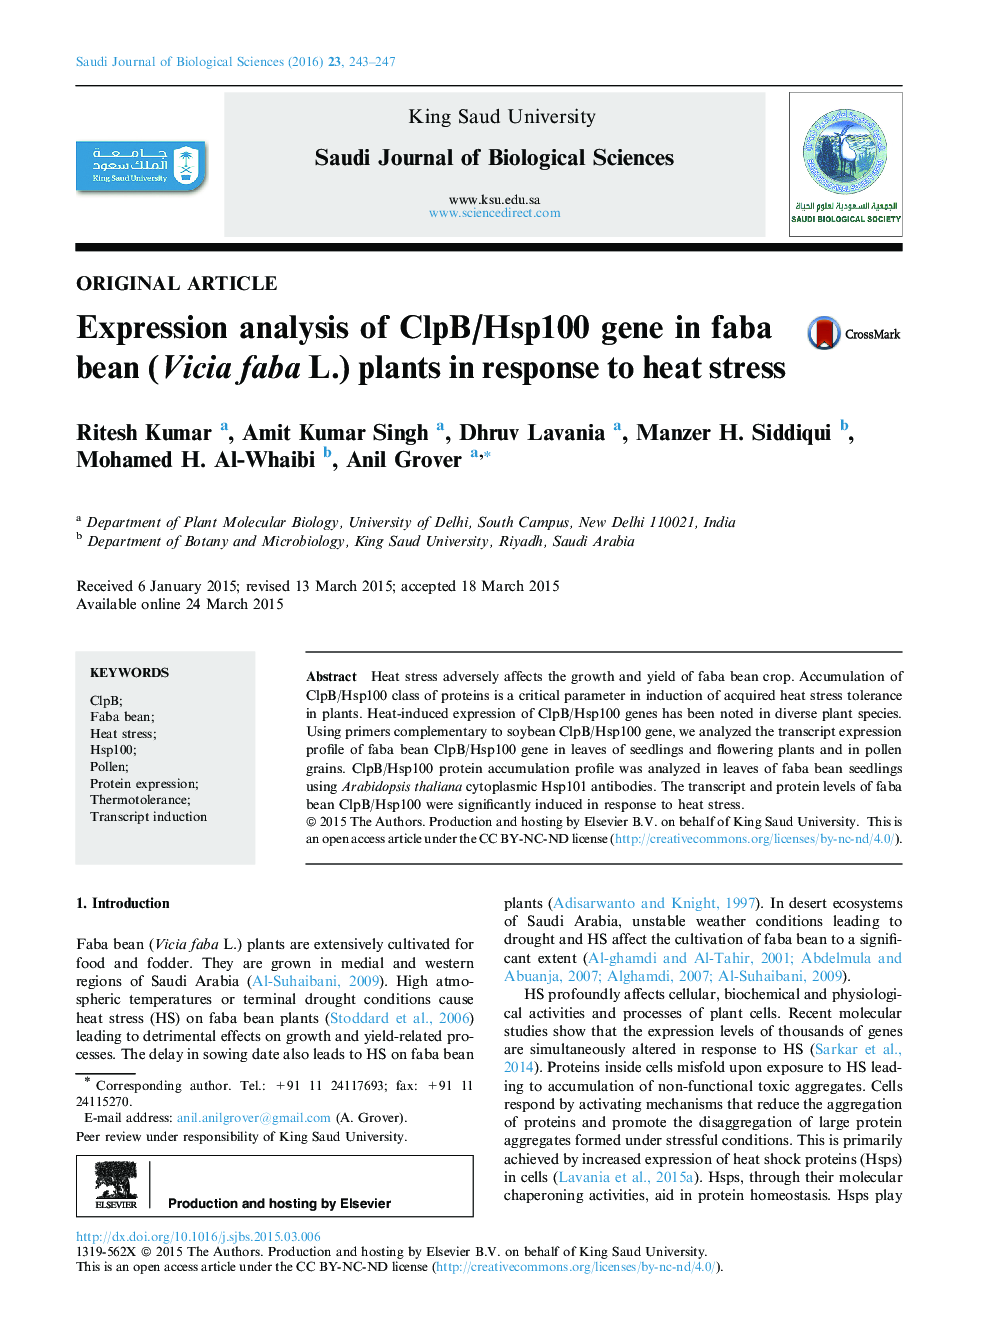 تجزیه و تحلیل بیان ژن ClpB / Hsp100 در گیاه Faba bean (Vicia faba L.) در پاسخ به استرس گرما